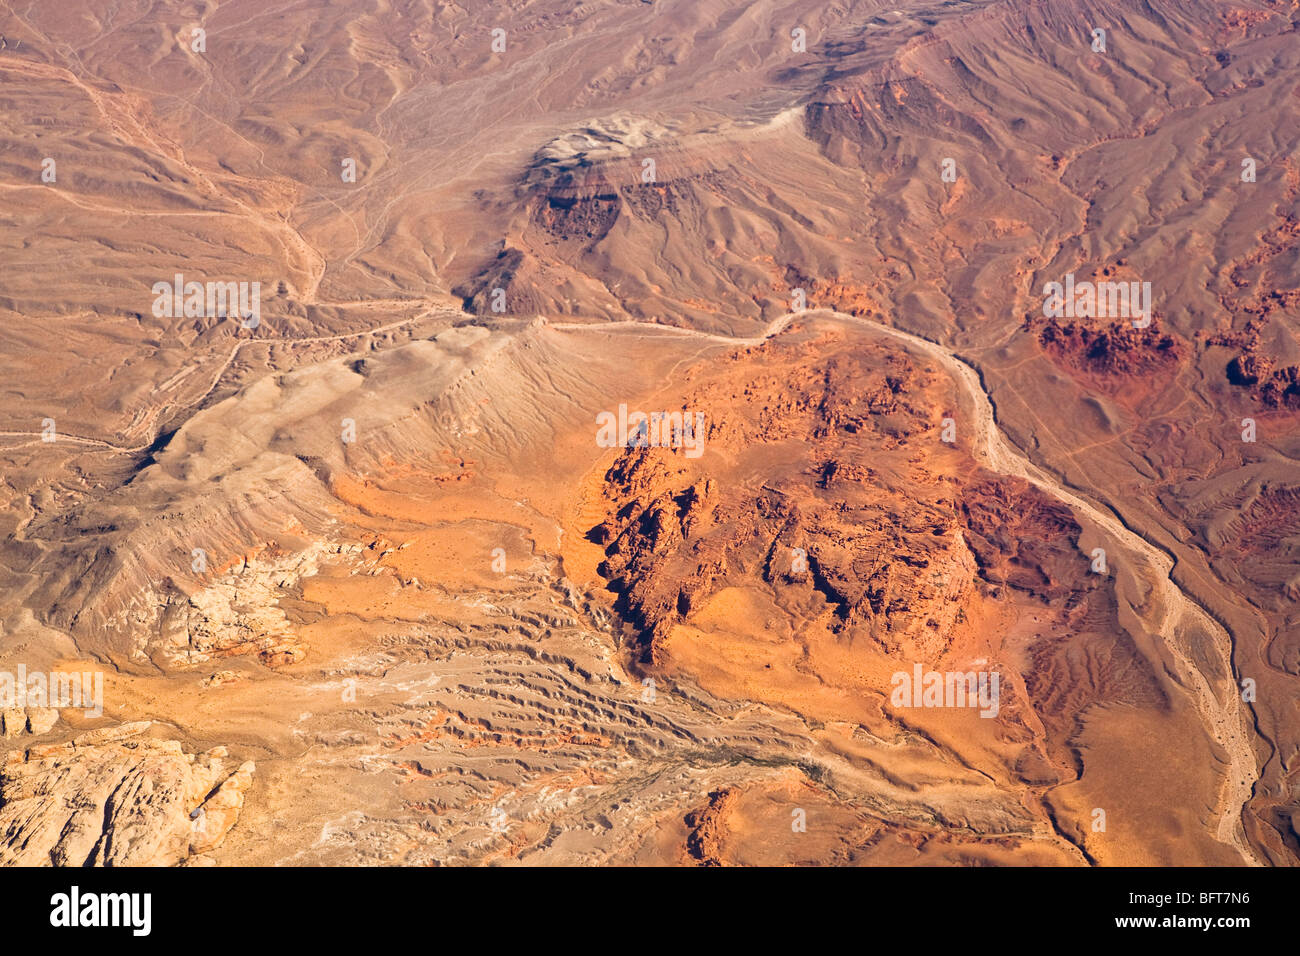 Desert Outside Las Vegas Nevada Stock Image - Image of scenic, environment:  157750221